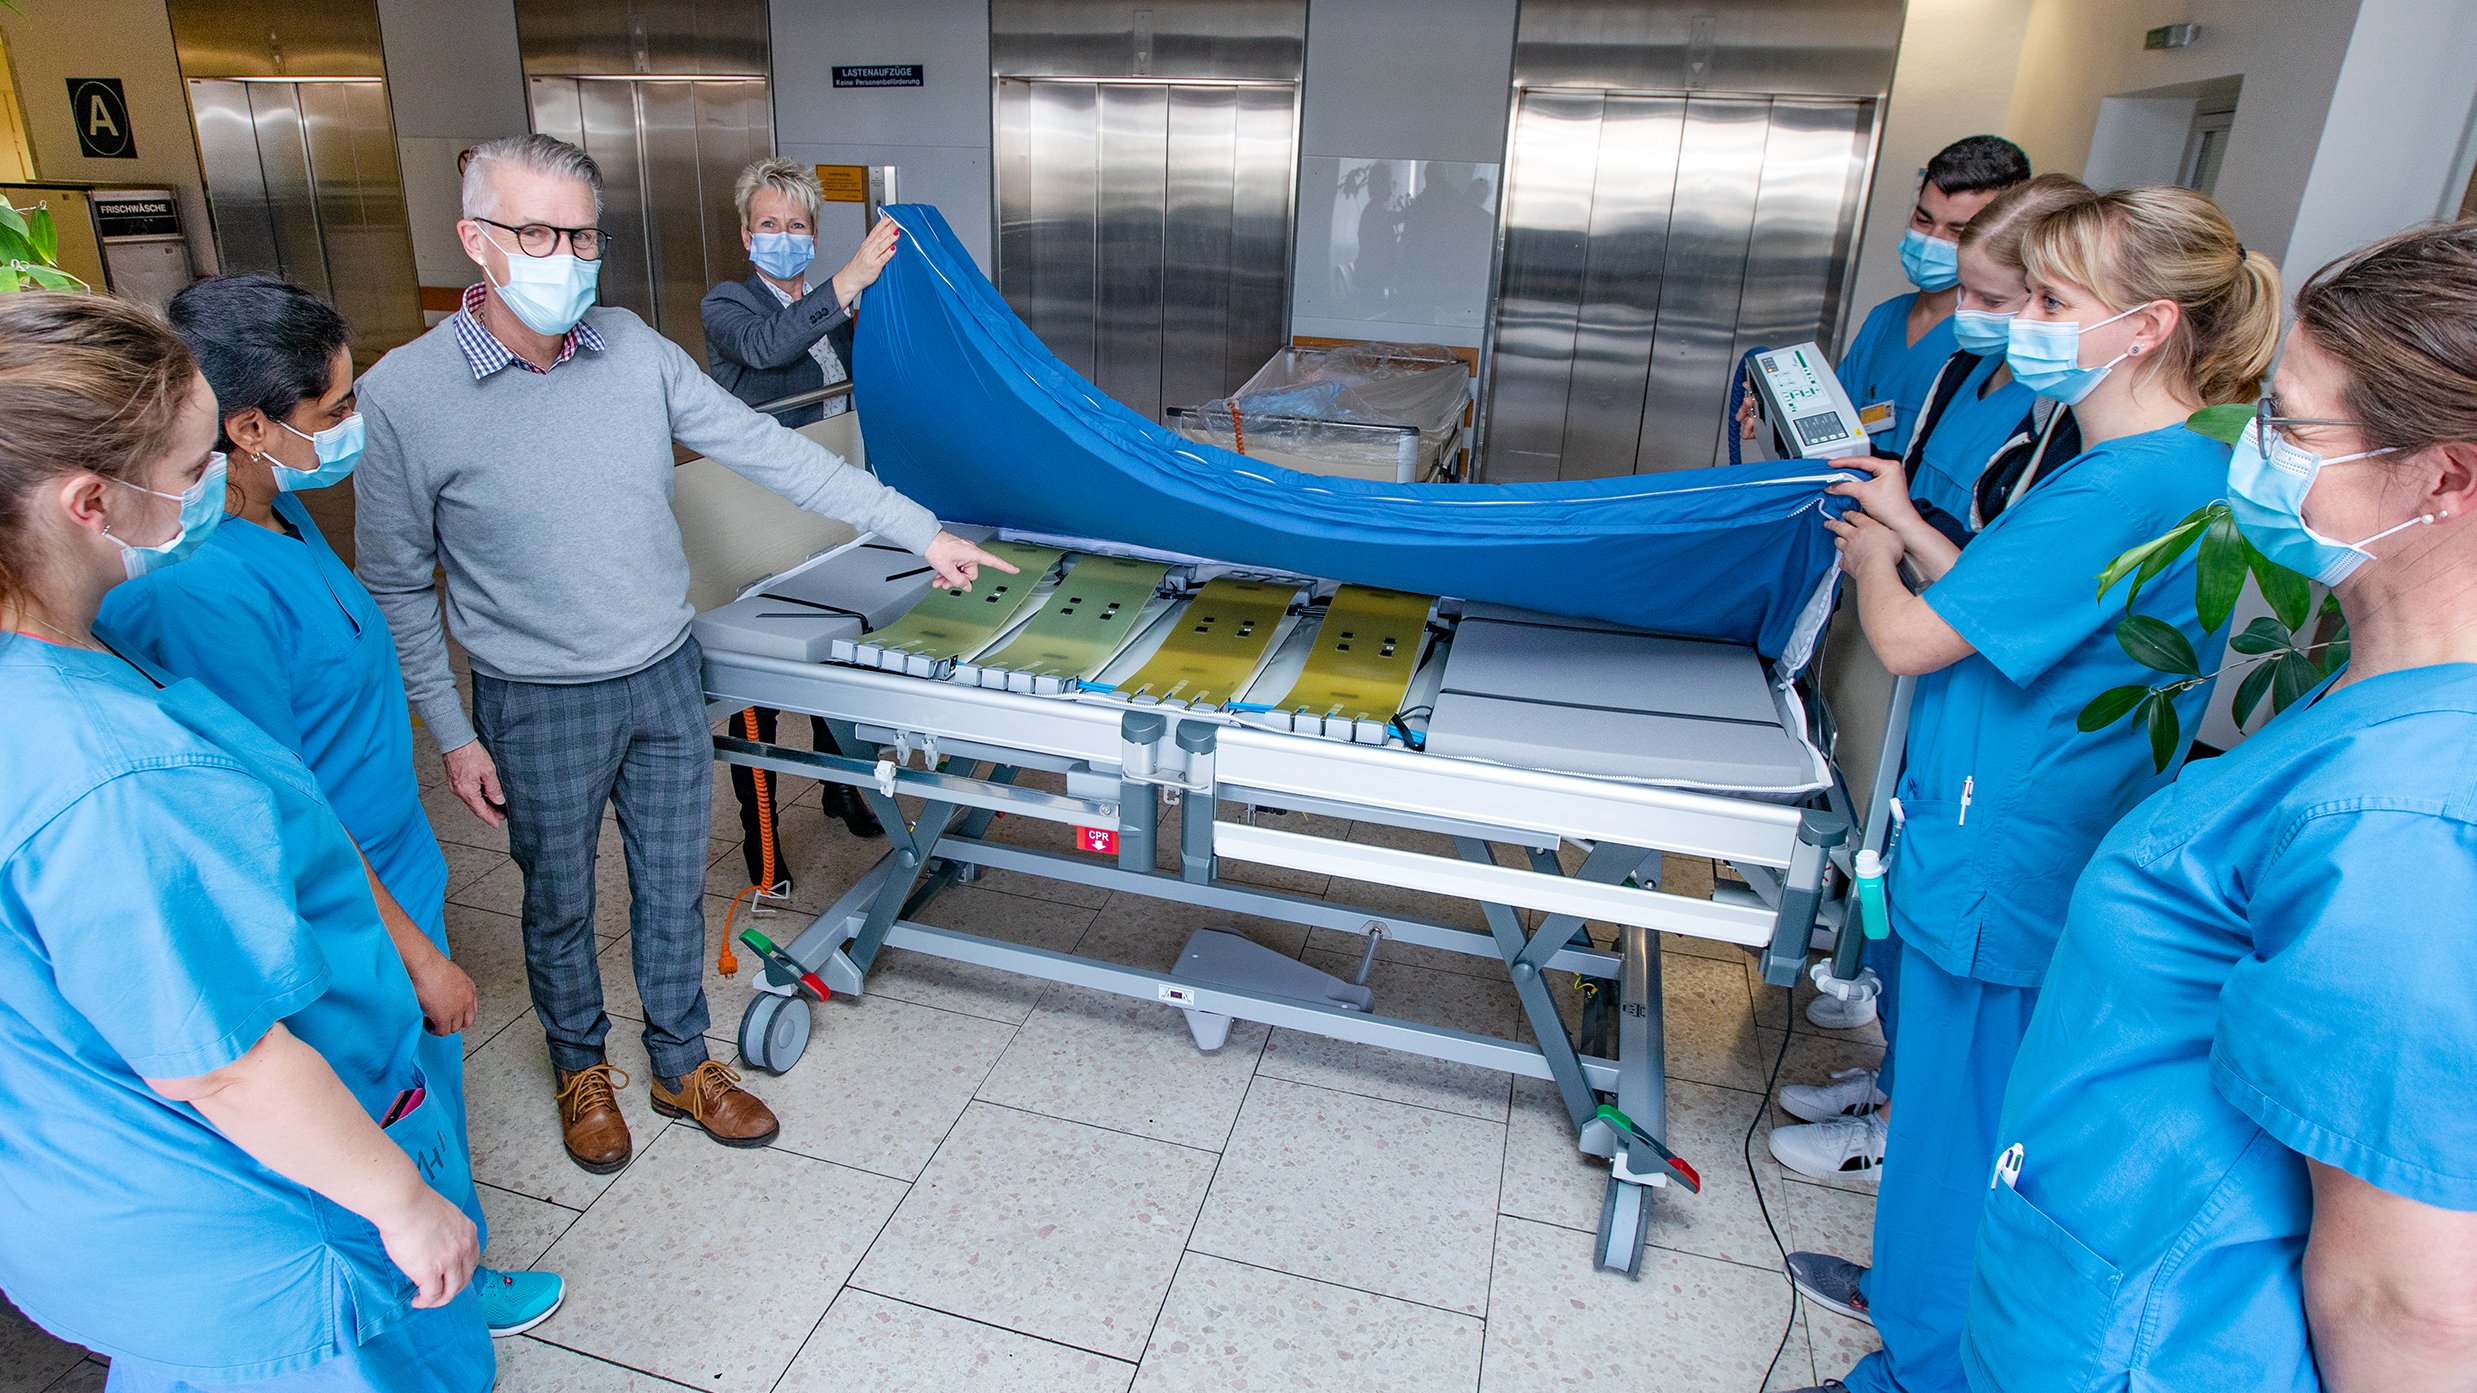 Mehrere Pflegekräfte heben die neu angeschaffte Matratze an. Der Mitarbeiter des Matratzenherstellers zeigt auf die komplexe Technik darunter, die die automatische Mobilisation ermöglicht. 